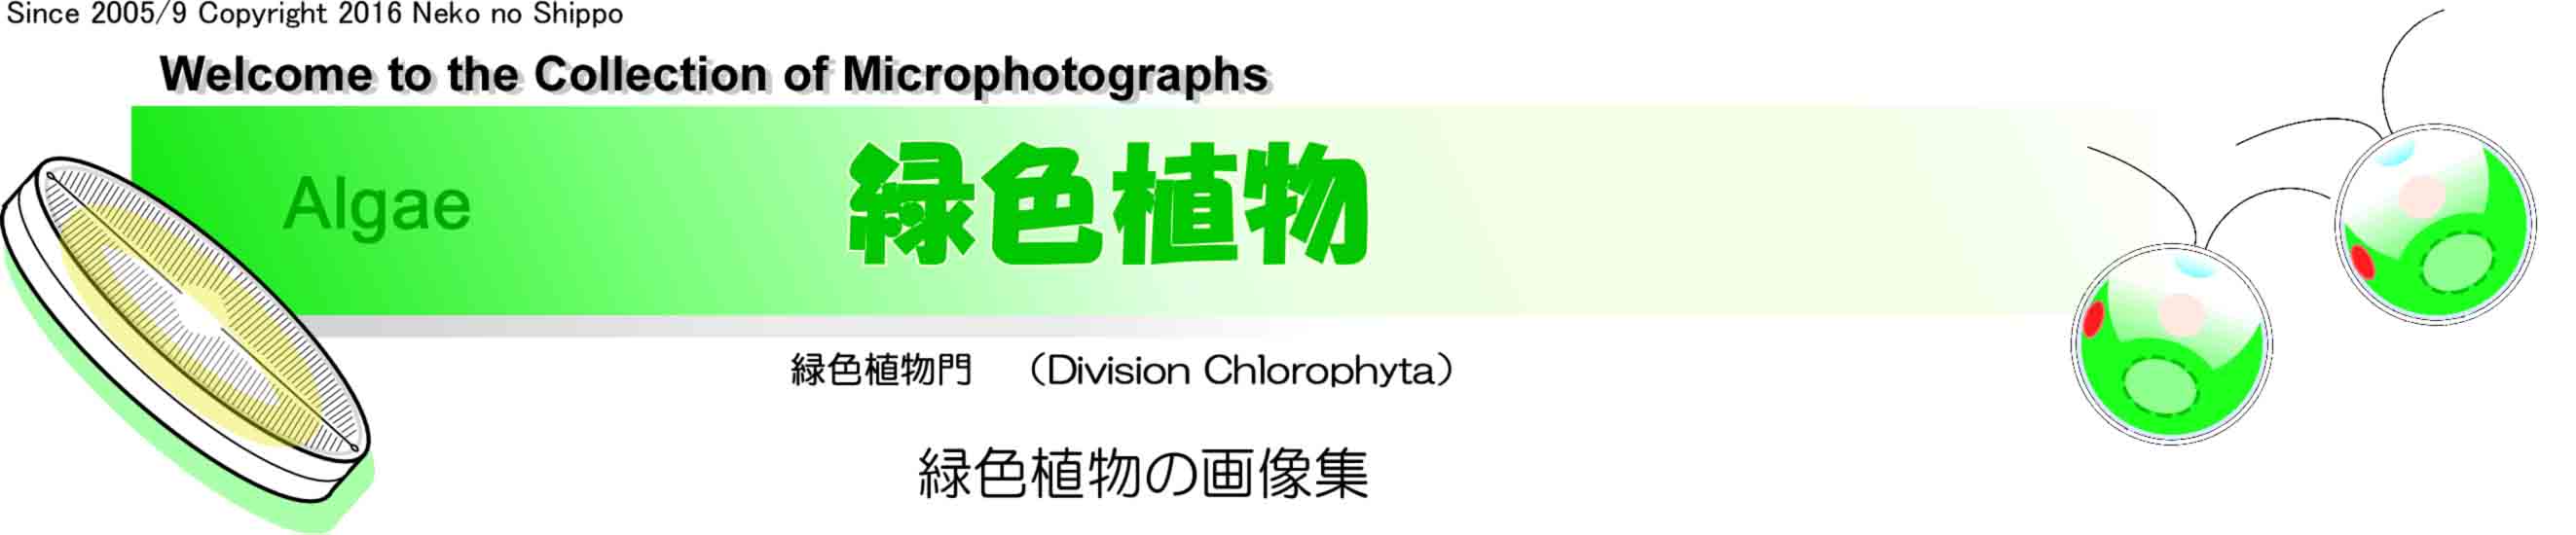 緑色植物門 Chlorophyta の画像集